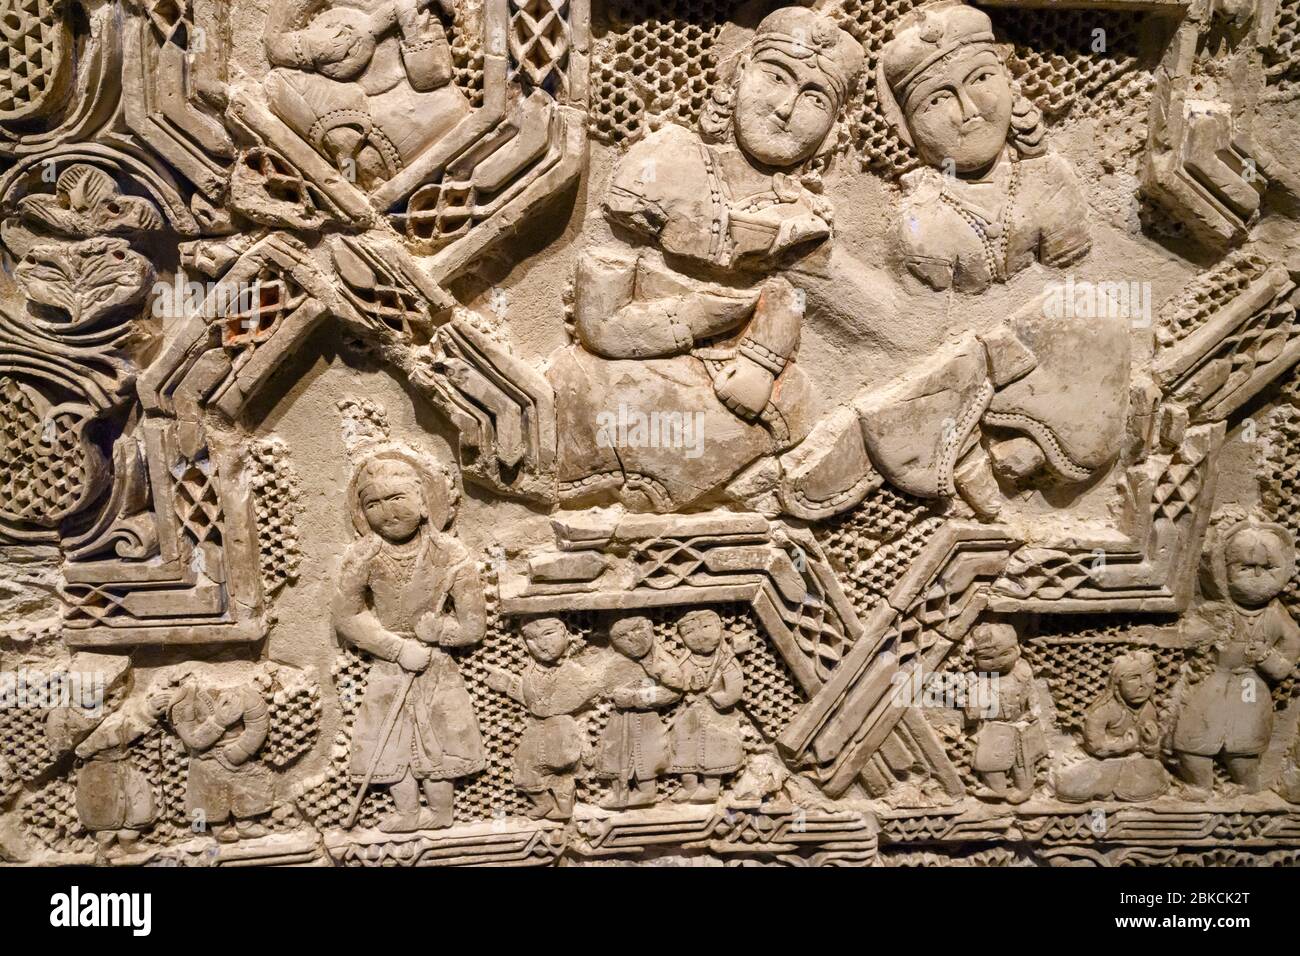 Panneau monumental avec des figures sculptées, XIIe siècle, Iran, stuc sculpté et peint moulé Banque D'Images